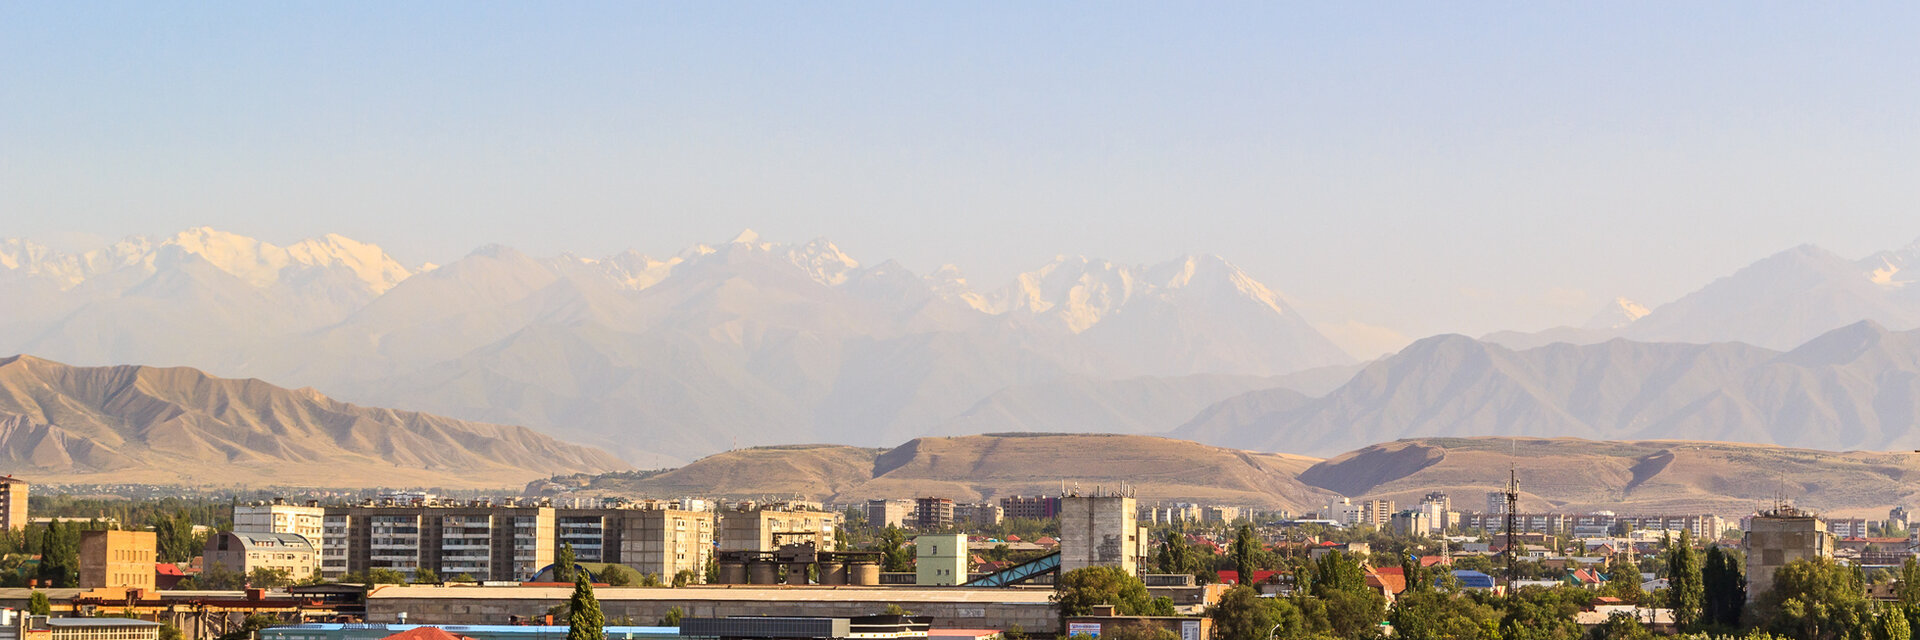 Отели и гостиницы в Бишкеке